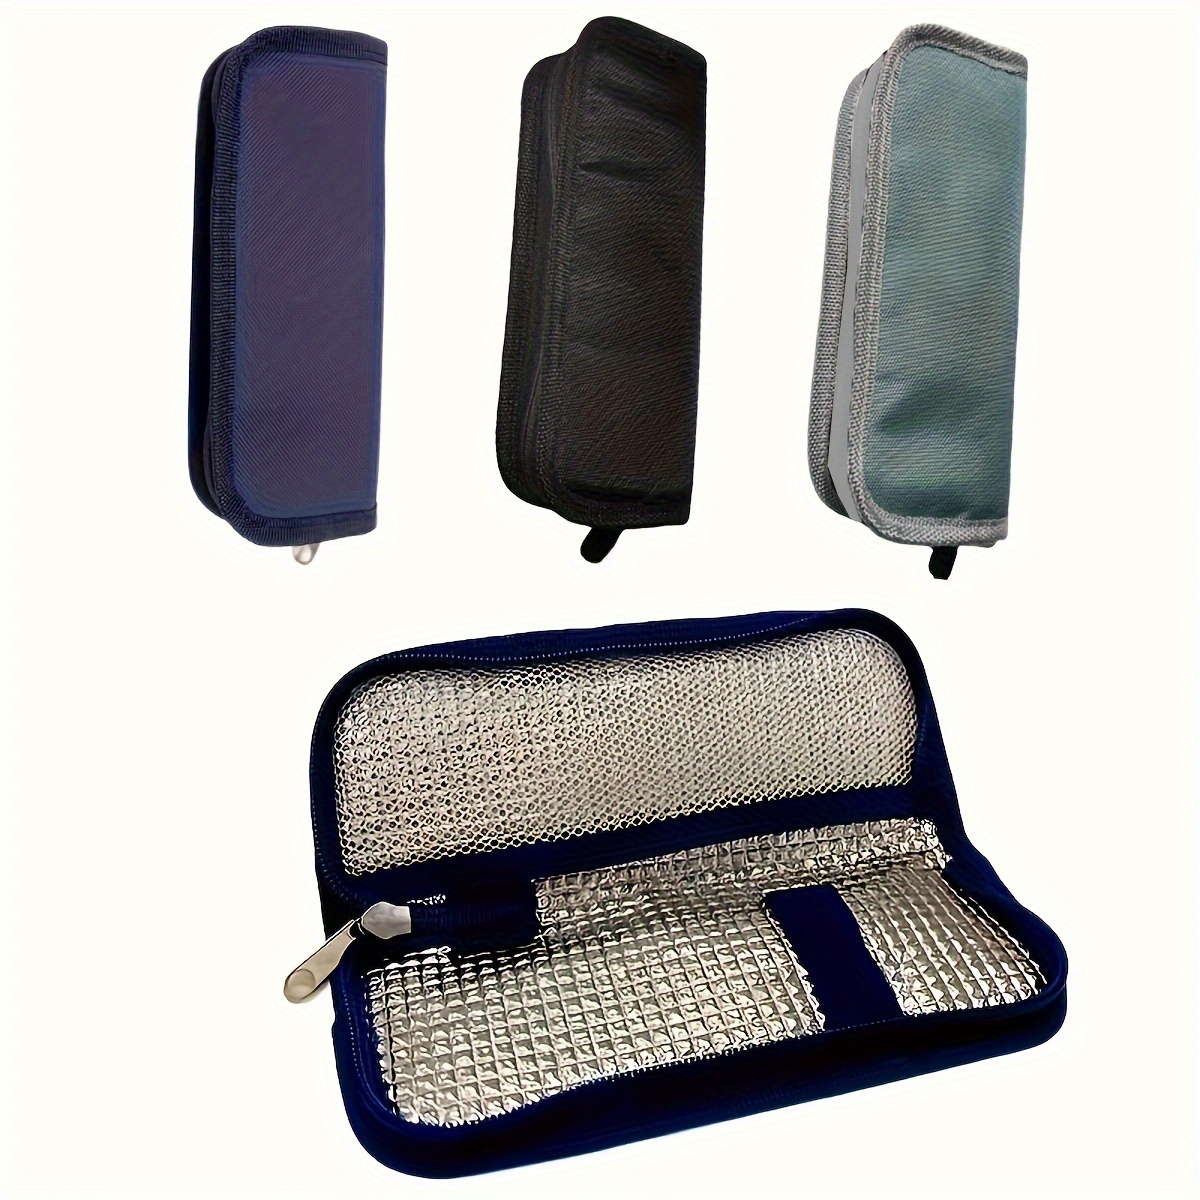 

Insulin Cooler Travel Bag, Portable Medical Cooler Bag, Lightweight Insulation Bag